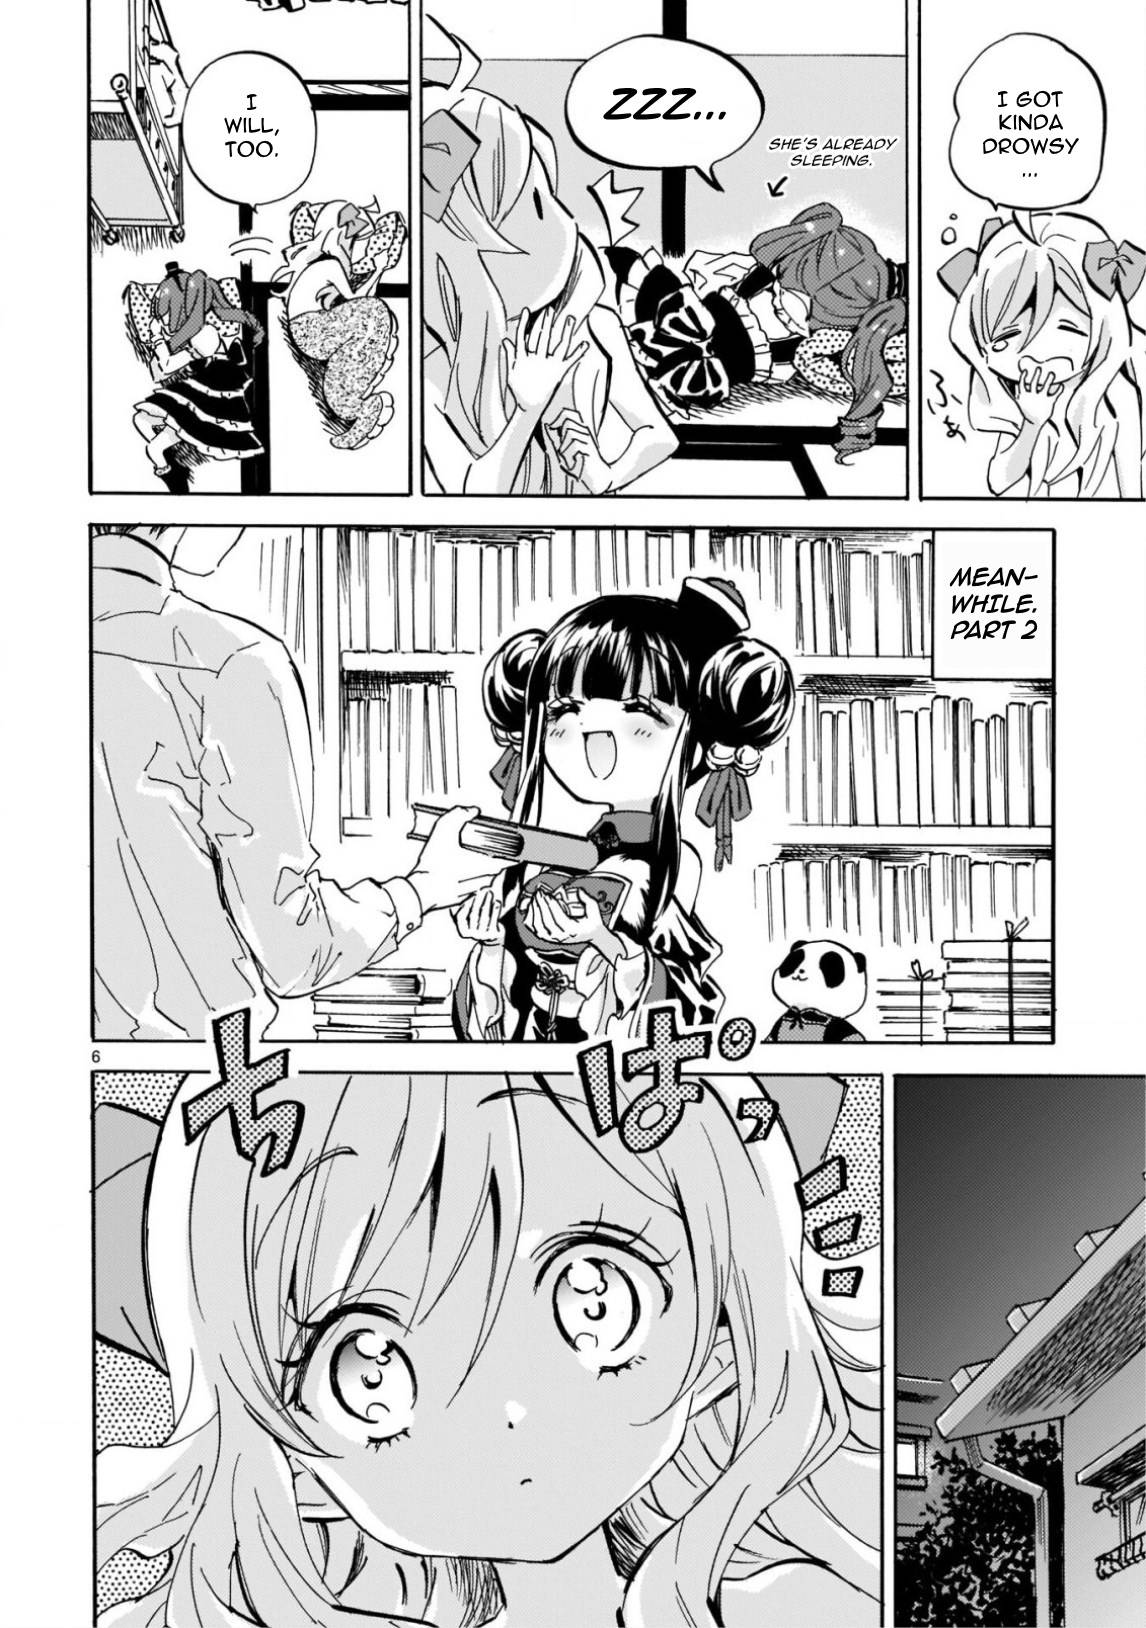 Jashin-chan Dropkick chapter 216 page 6